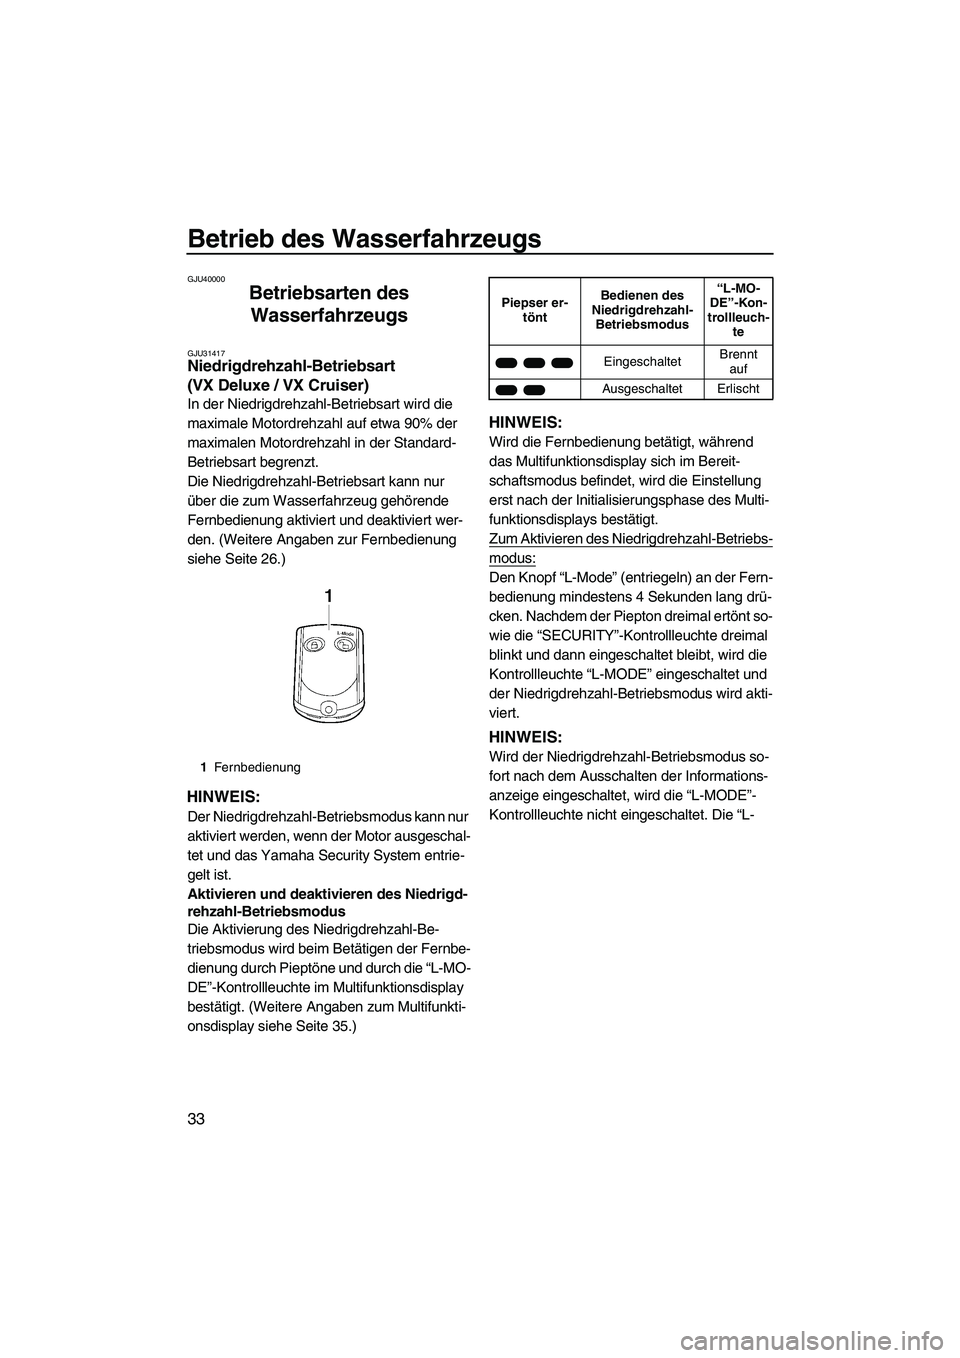 YAMAHA VX DELUXE 2013  Betriebsanleitungen (in German) Betrieb des Wasserfahrzeugs
33
GJU40000
Betriebsarten des Wasserfahrzeugs 
GJU31417Niedrigdrehzahl-Betriebsart 
(VX Deluxe / VX Cruiser) 
In der Niedrigdrehzahl-Betriebsart wird die 
maximale Motordre